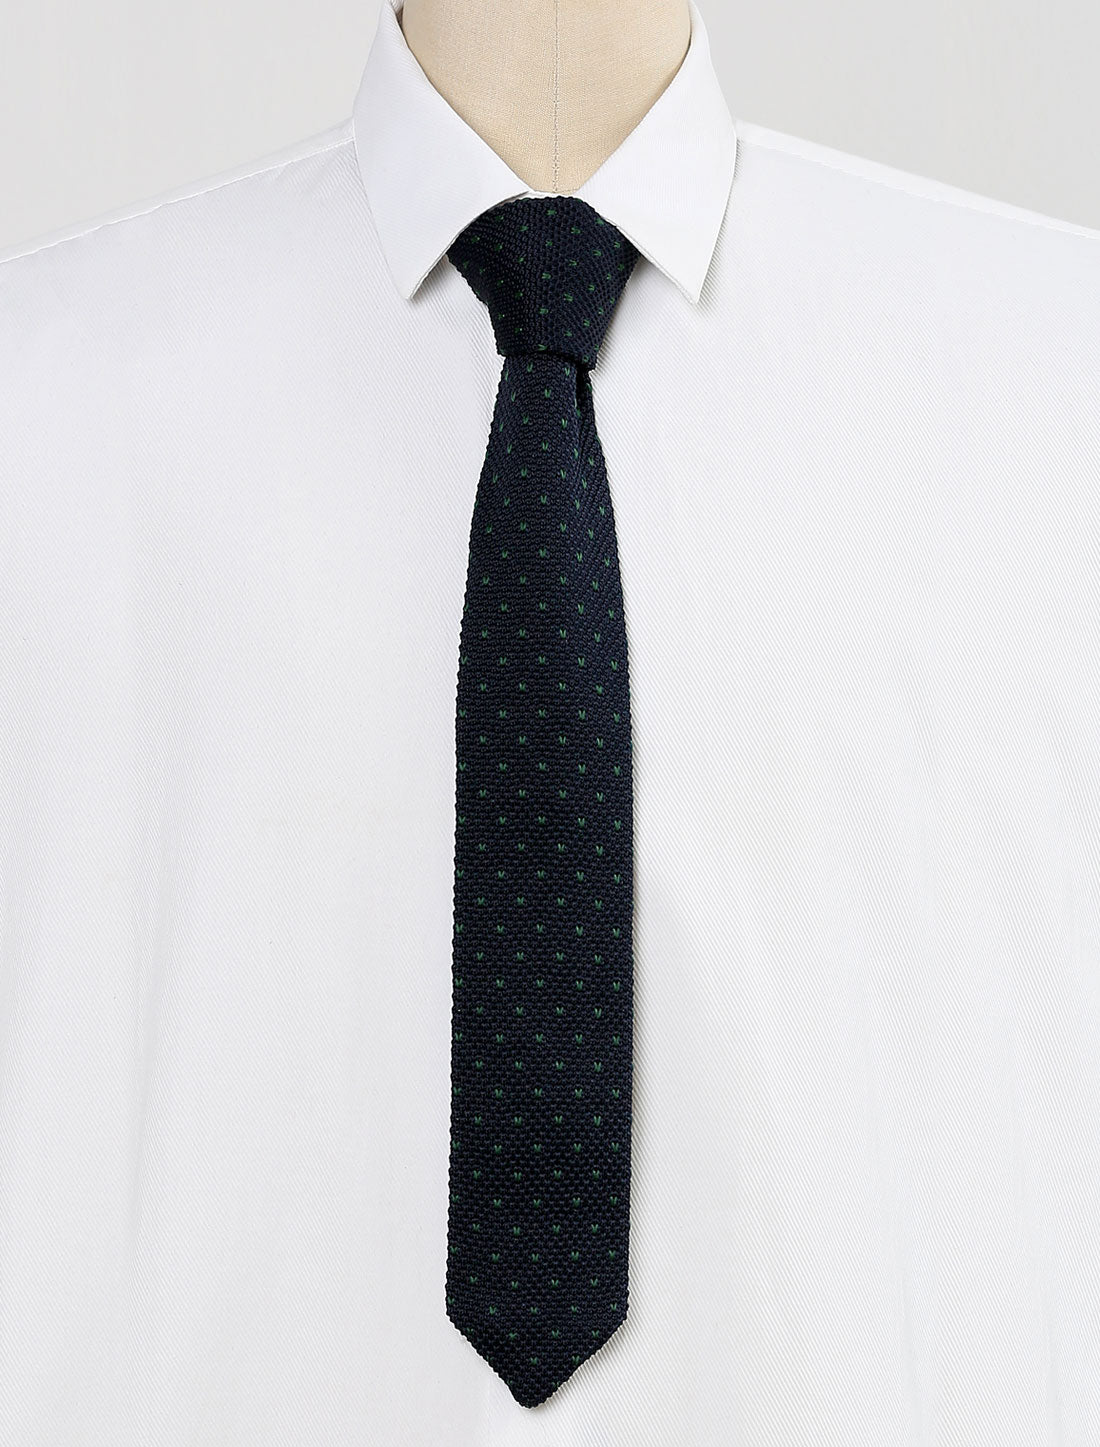 Allegra K Knitted Neckties for Men Regular Tie Heart Print Ties